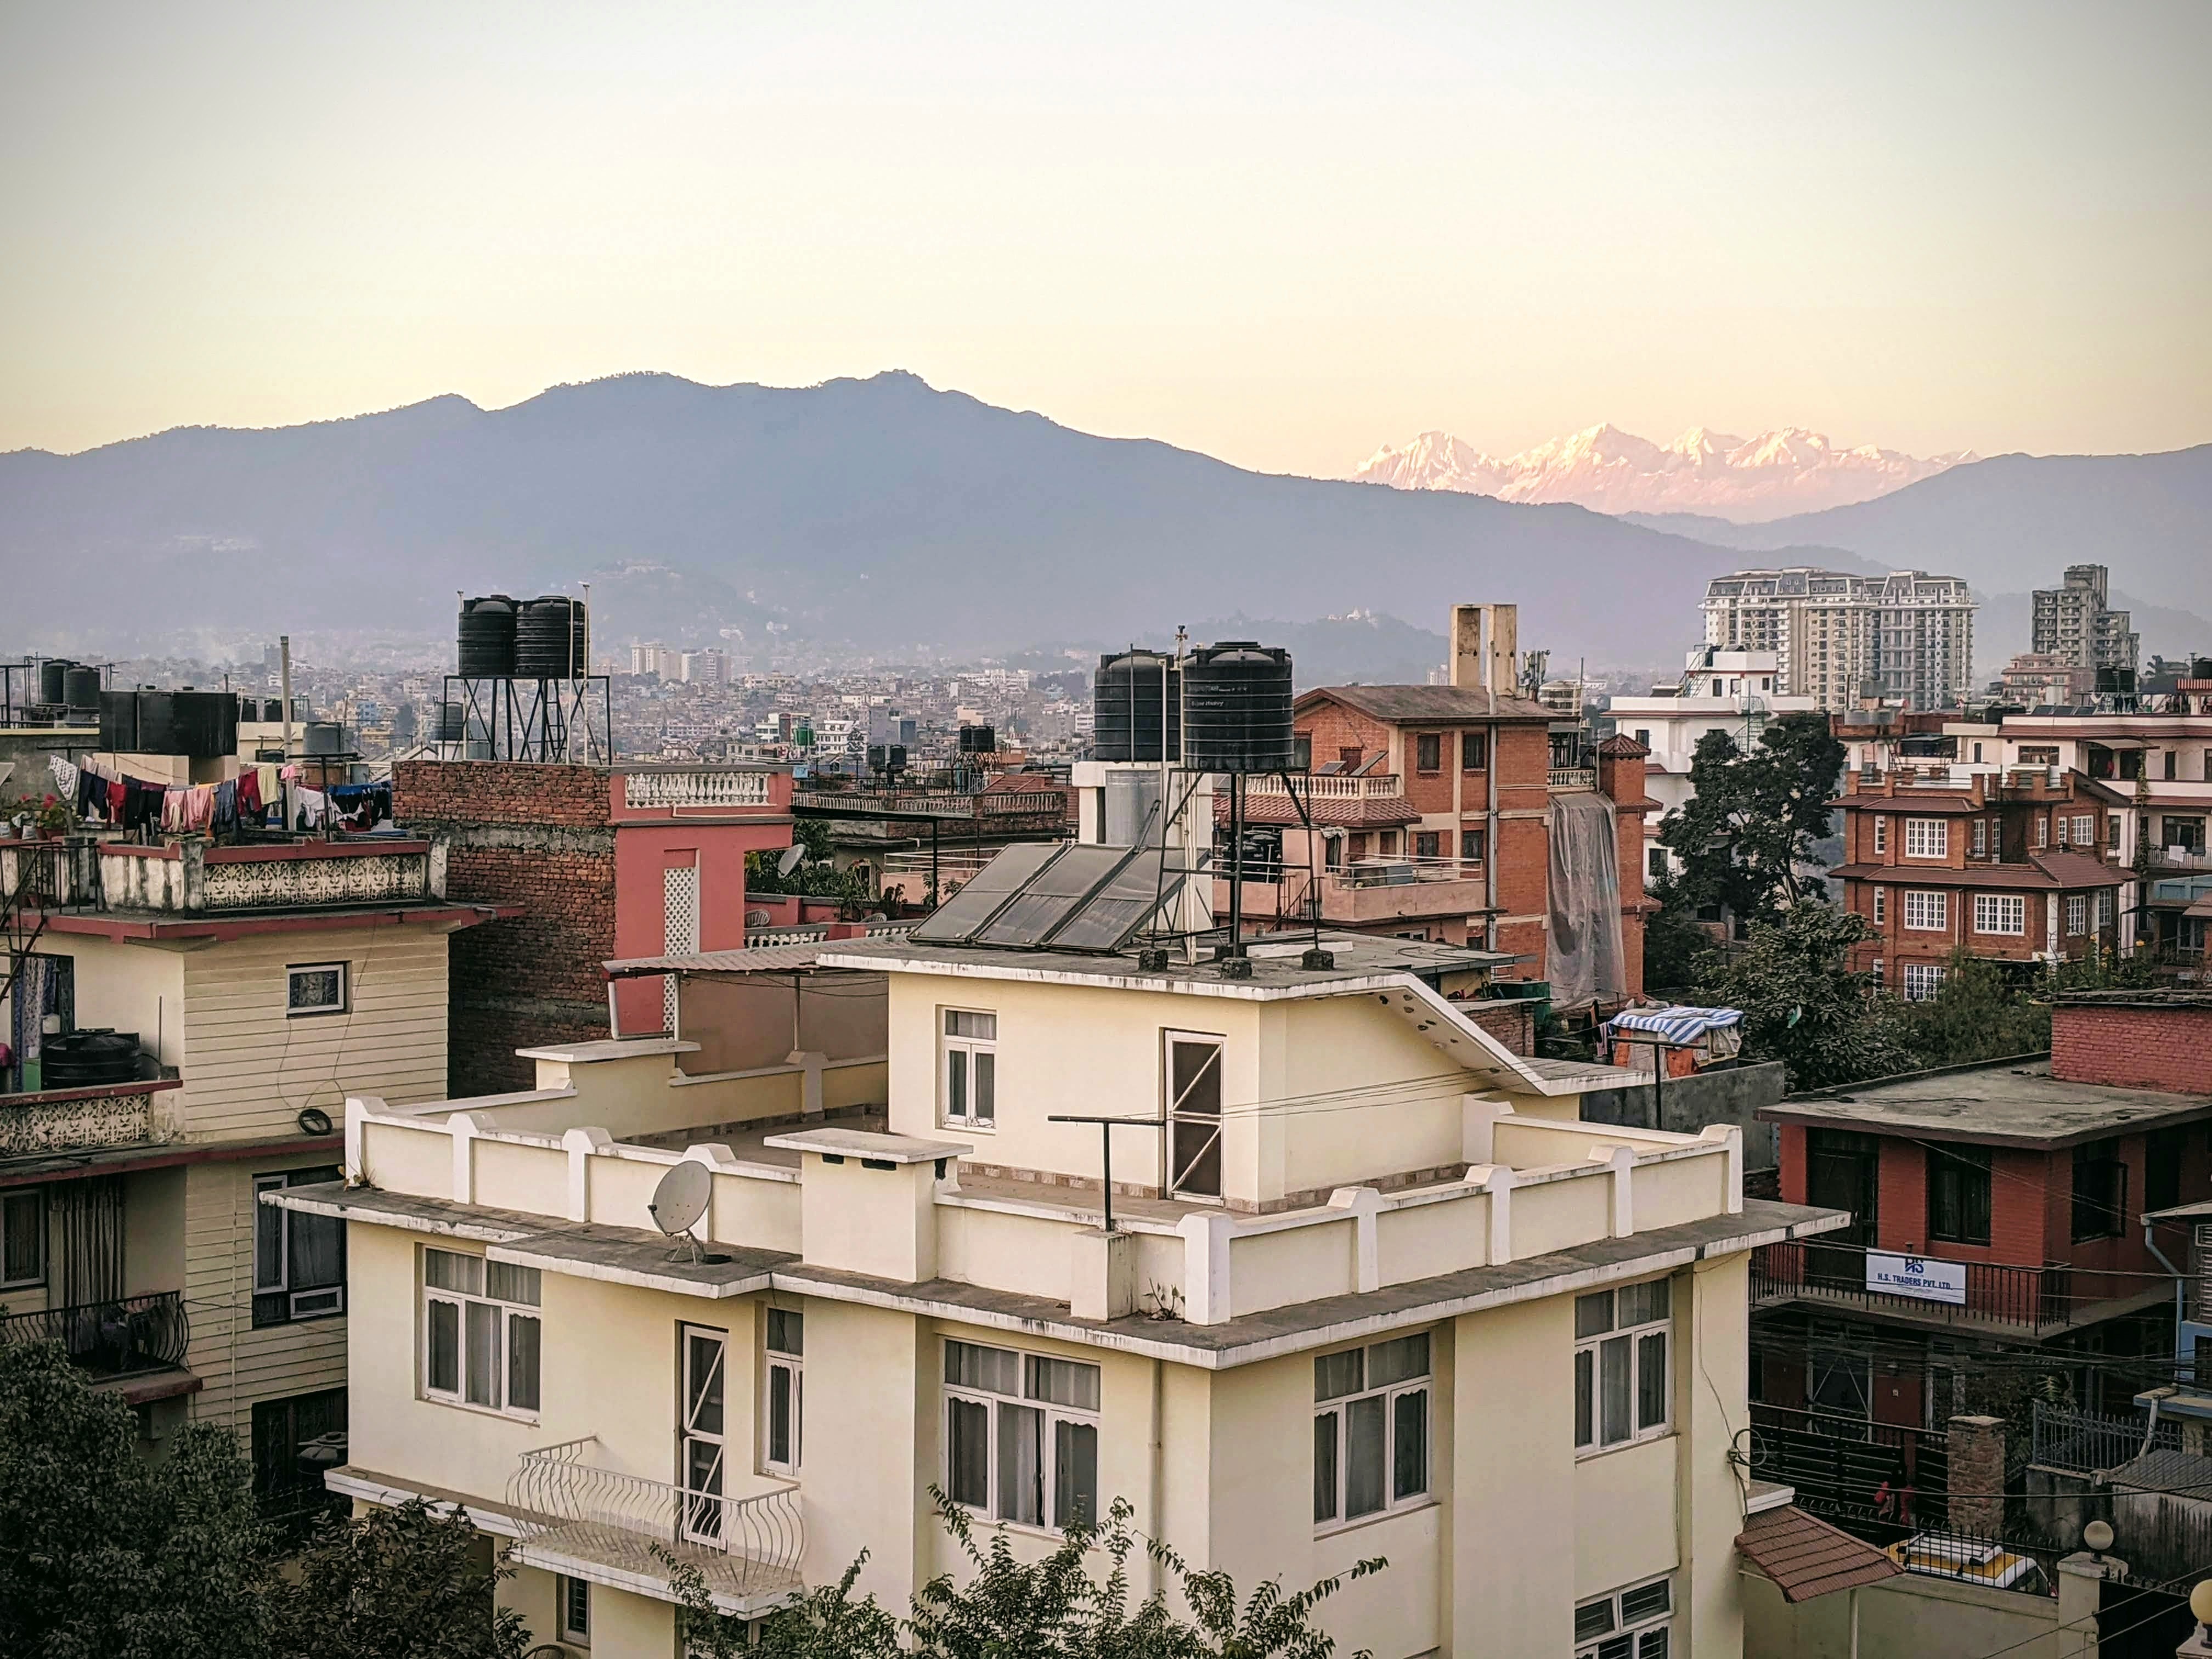 Cityscape photo of Kathmandu, Nepal